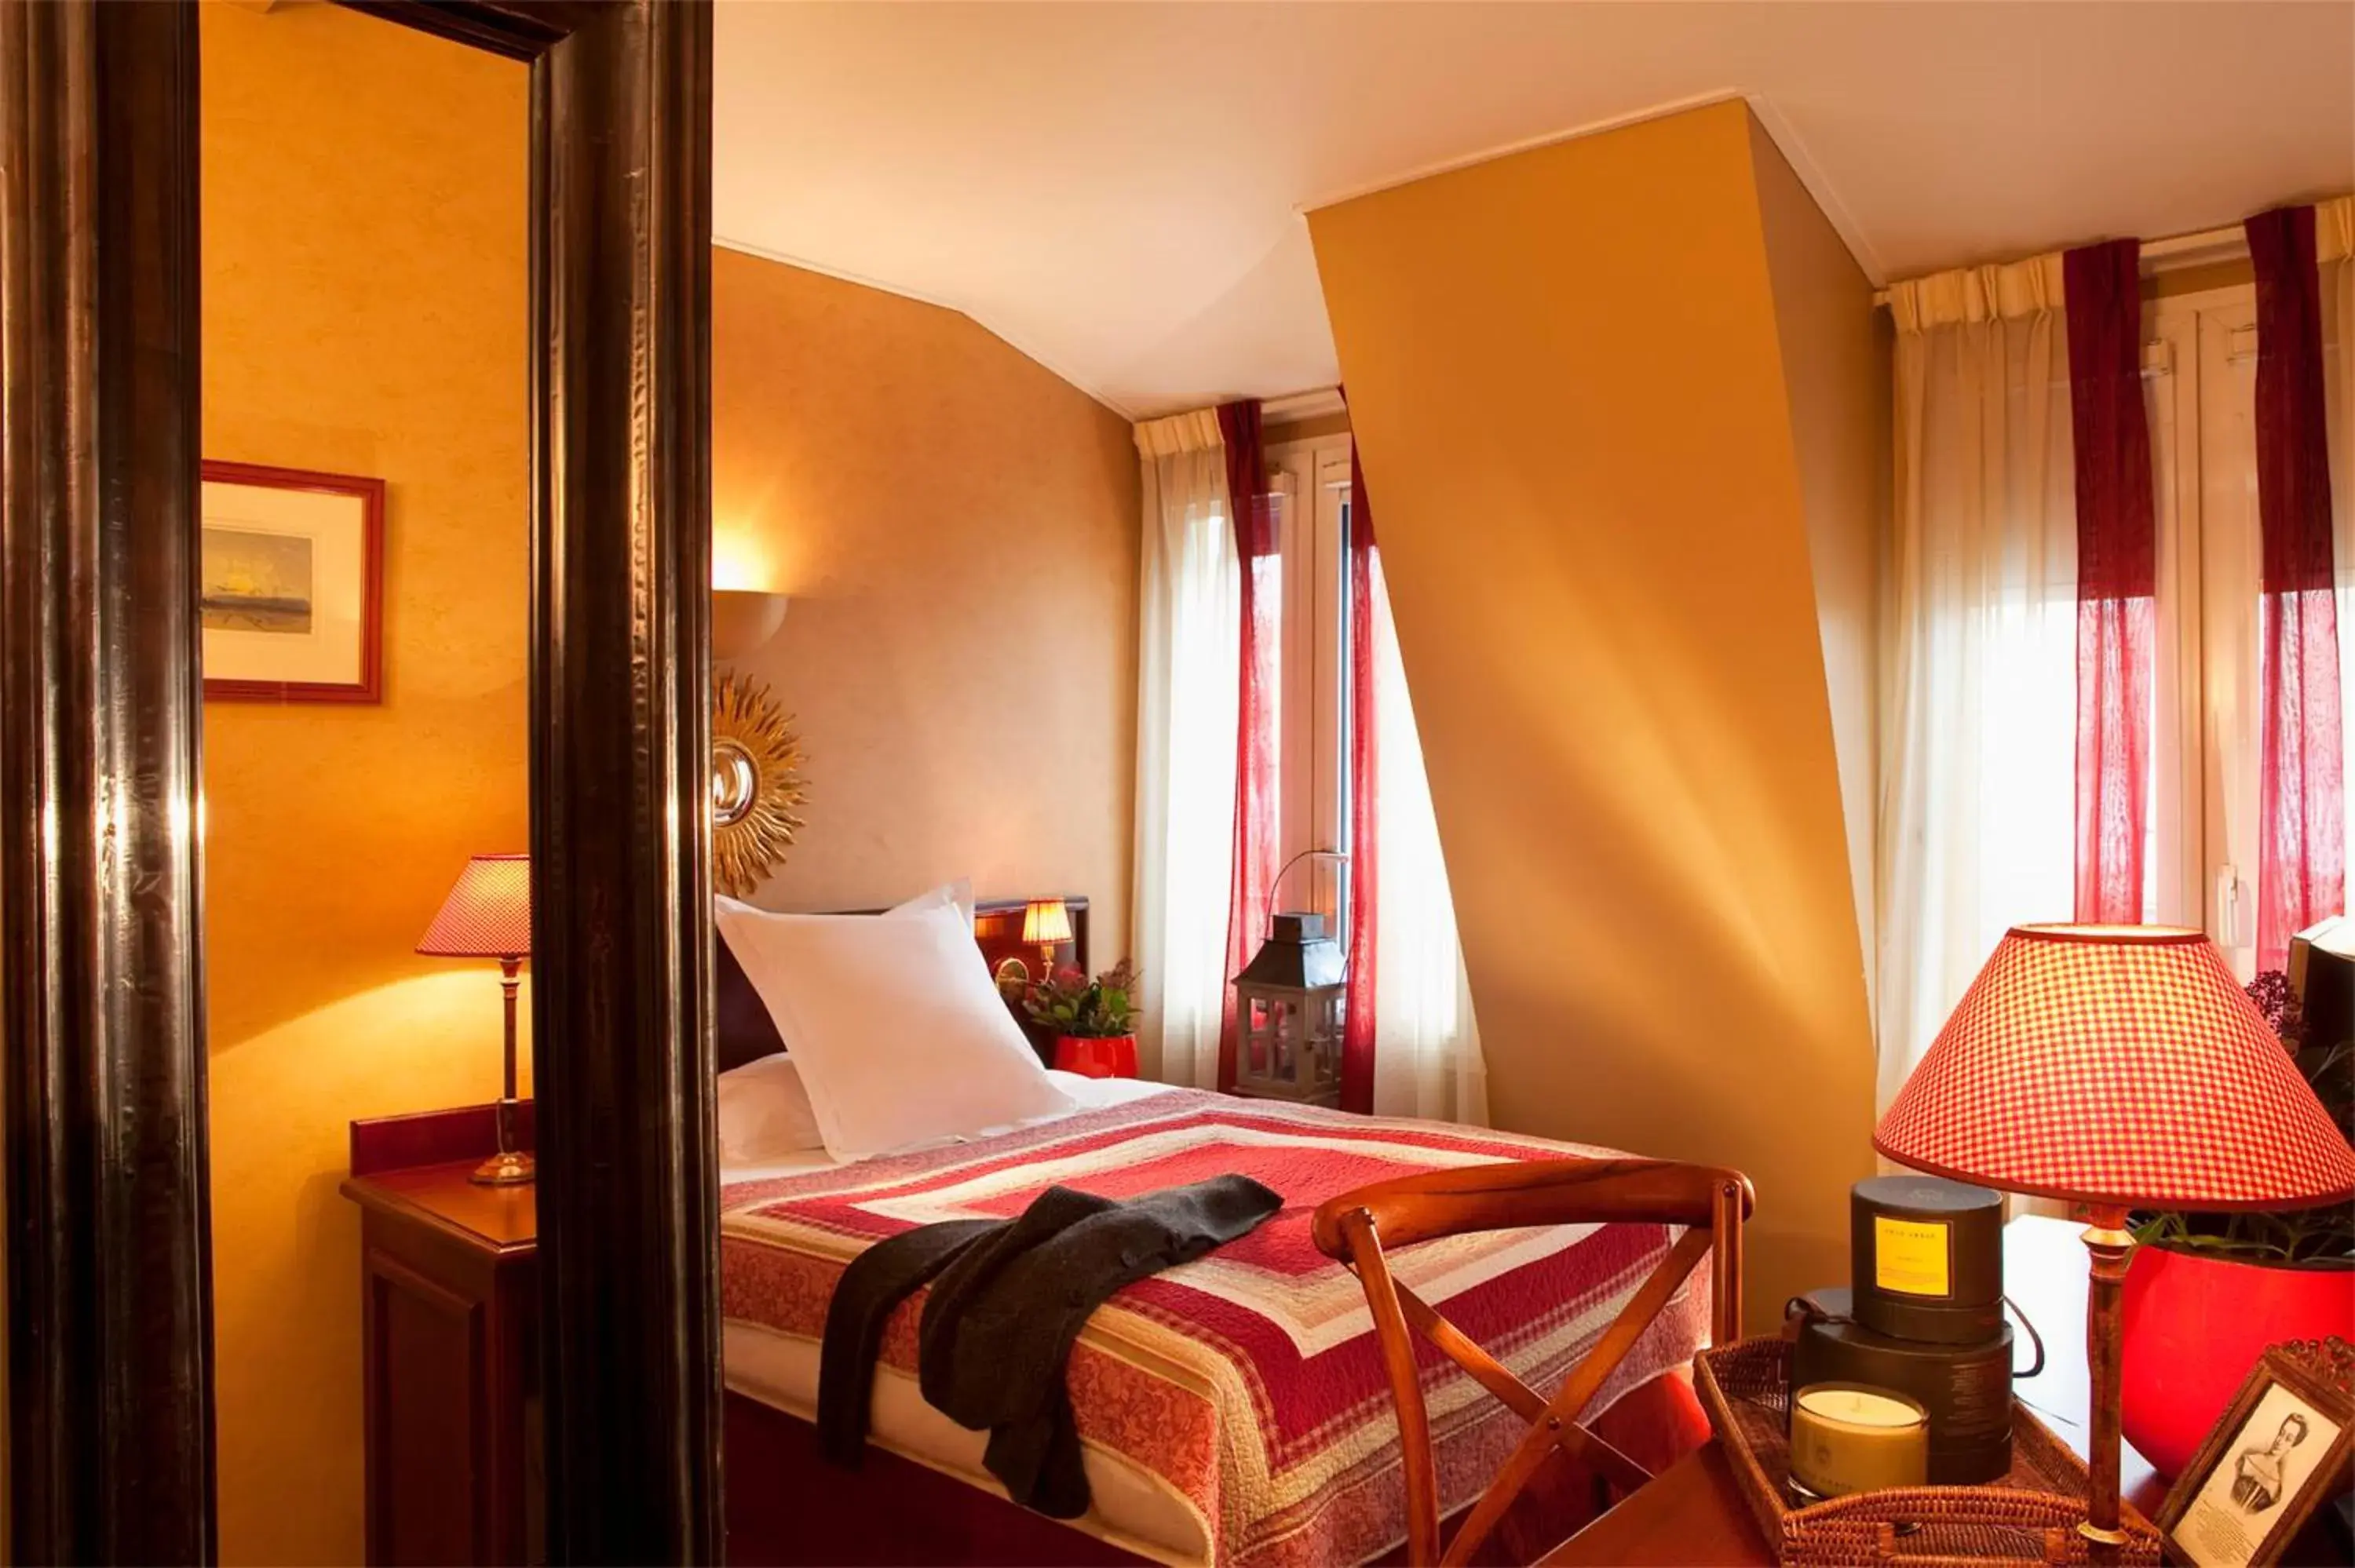 Bedroom in Hotel Britannique